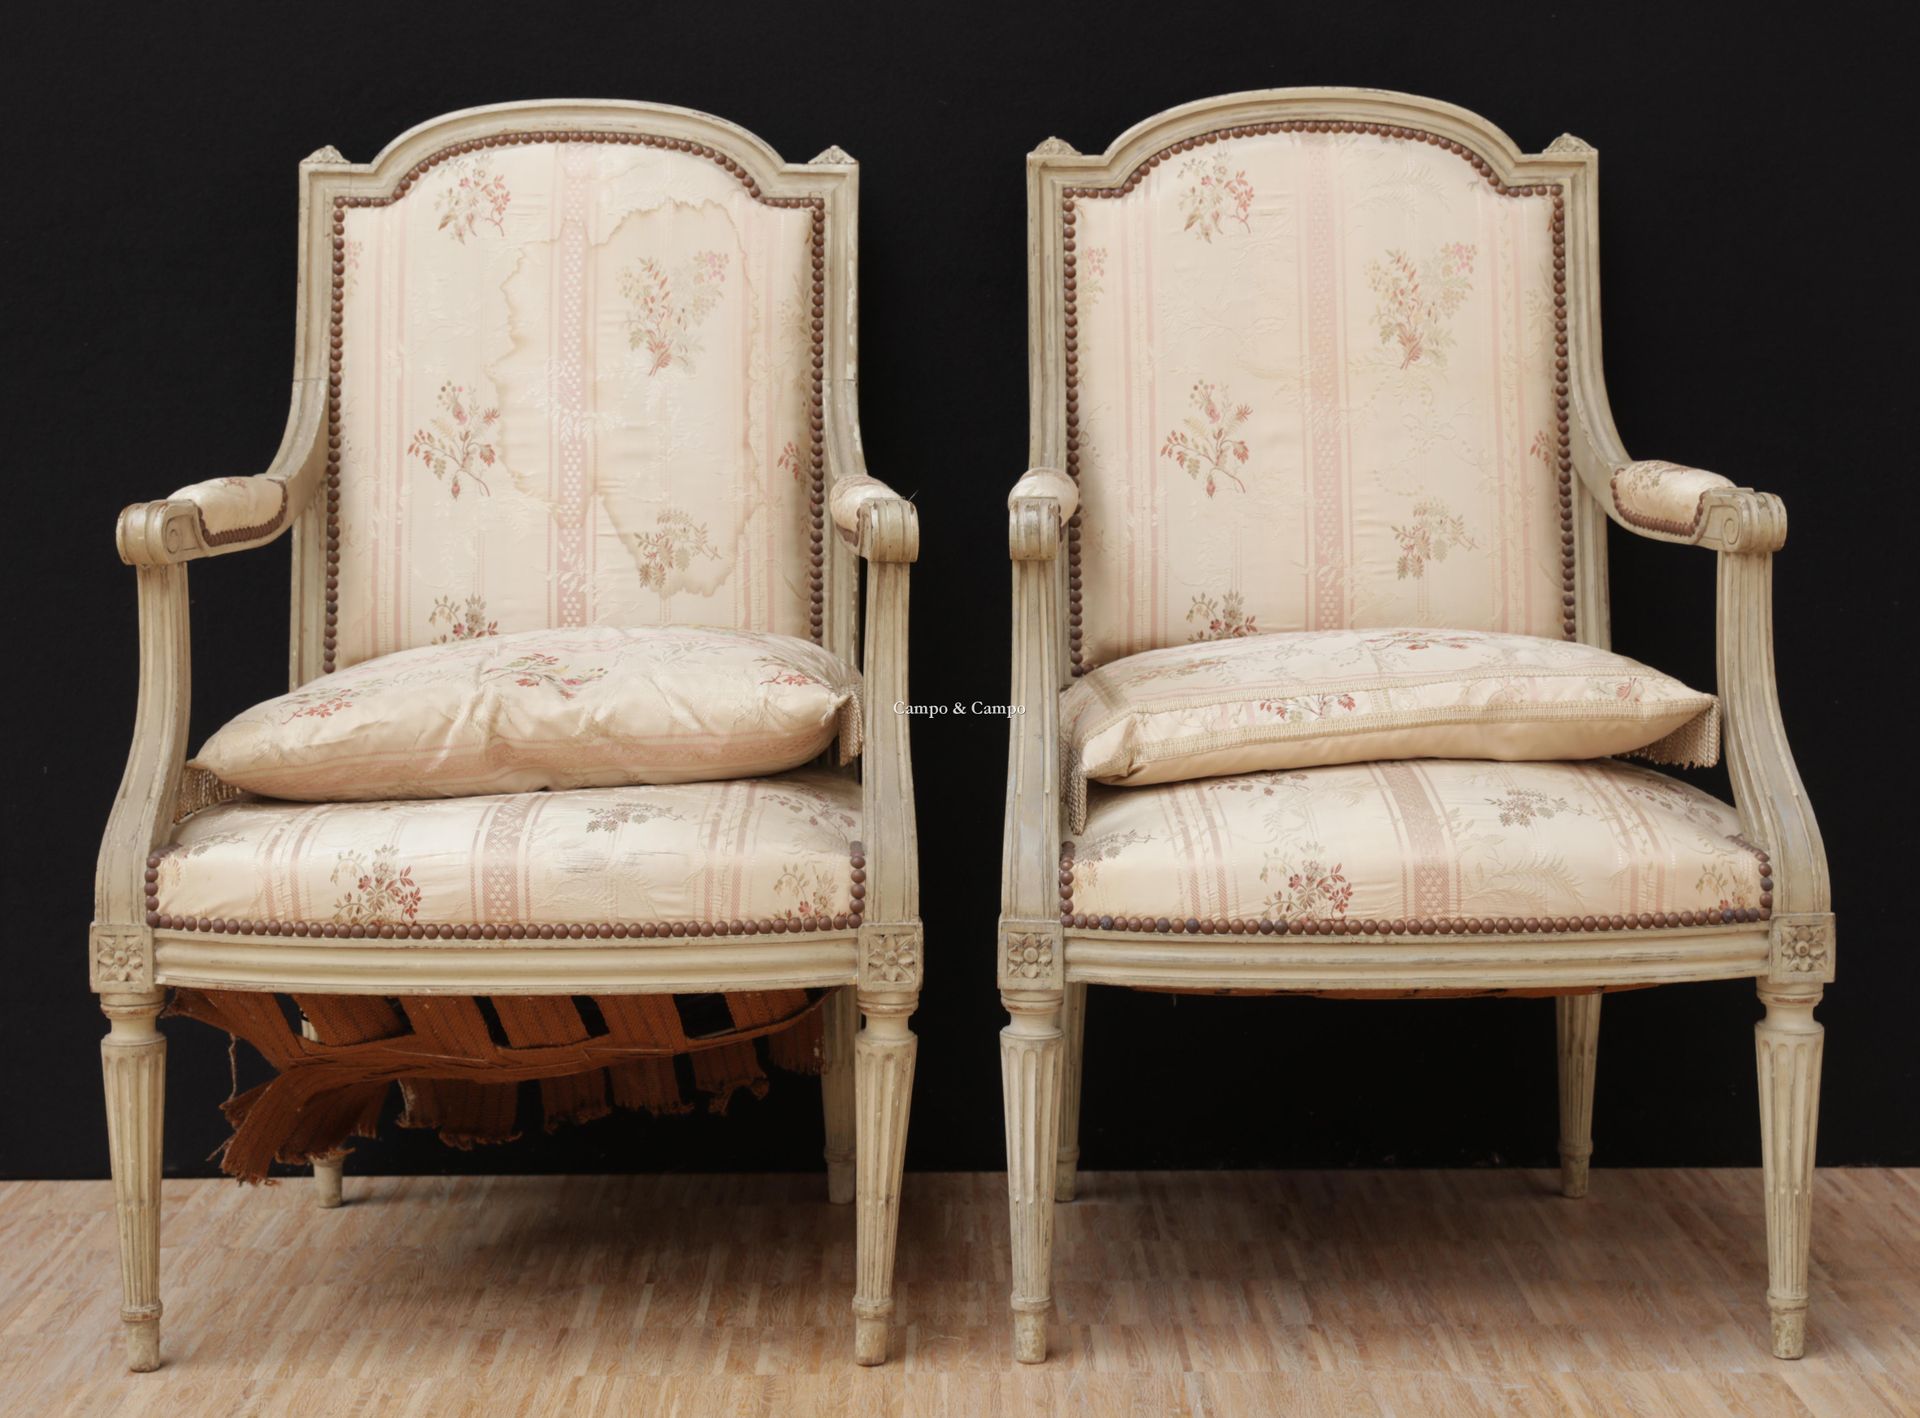 VARIA 一对路易十六风格的扶手椅
Paar fauteuils in Louis XVI stijl
 H= 98 cm